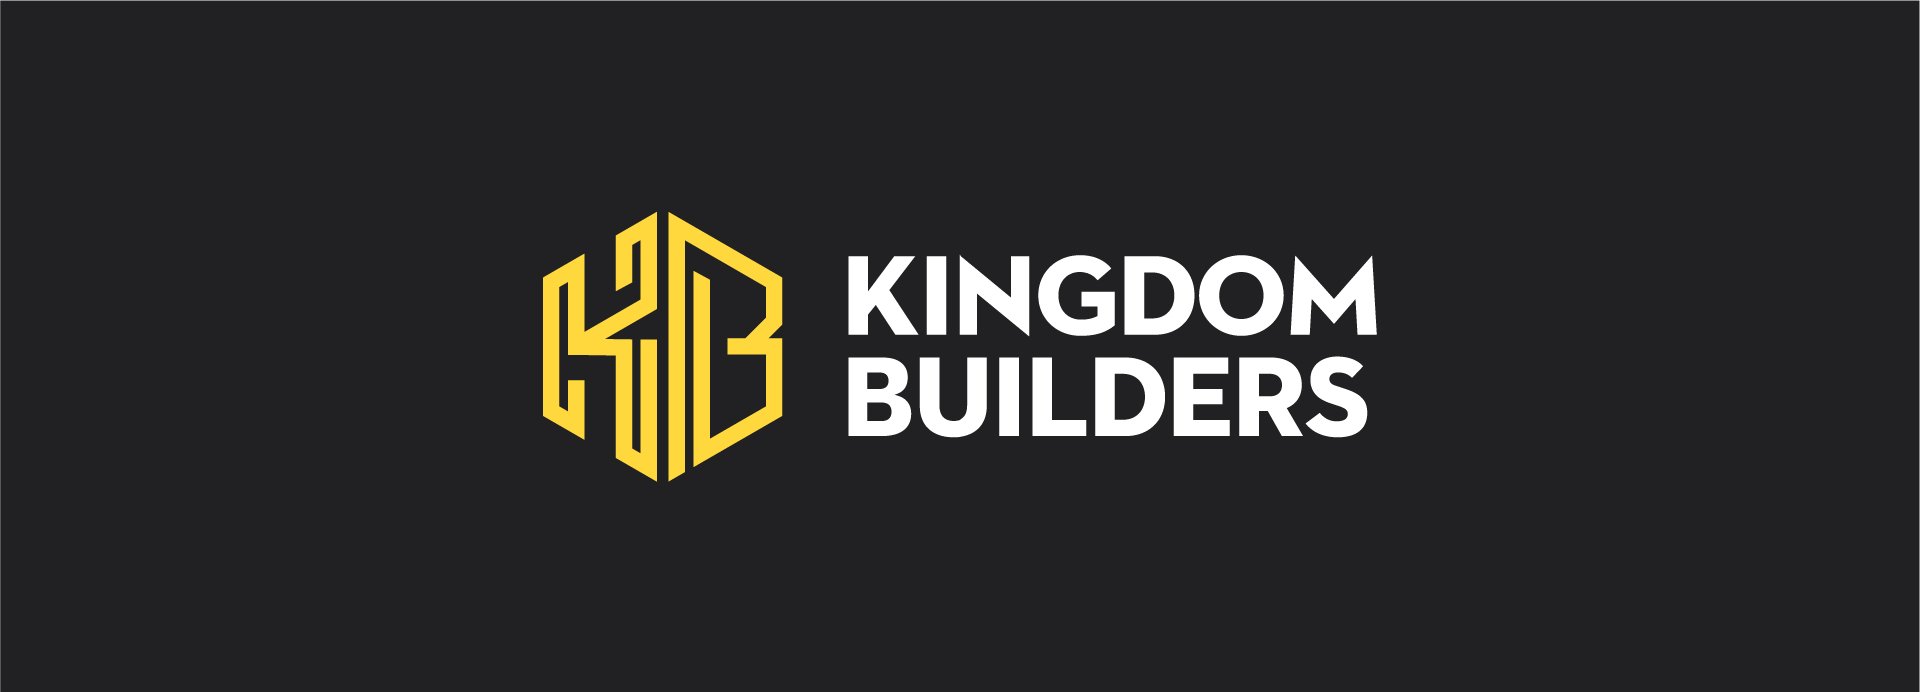 Kingdom Builders Kingsway Church